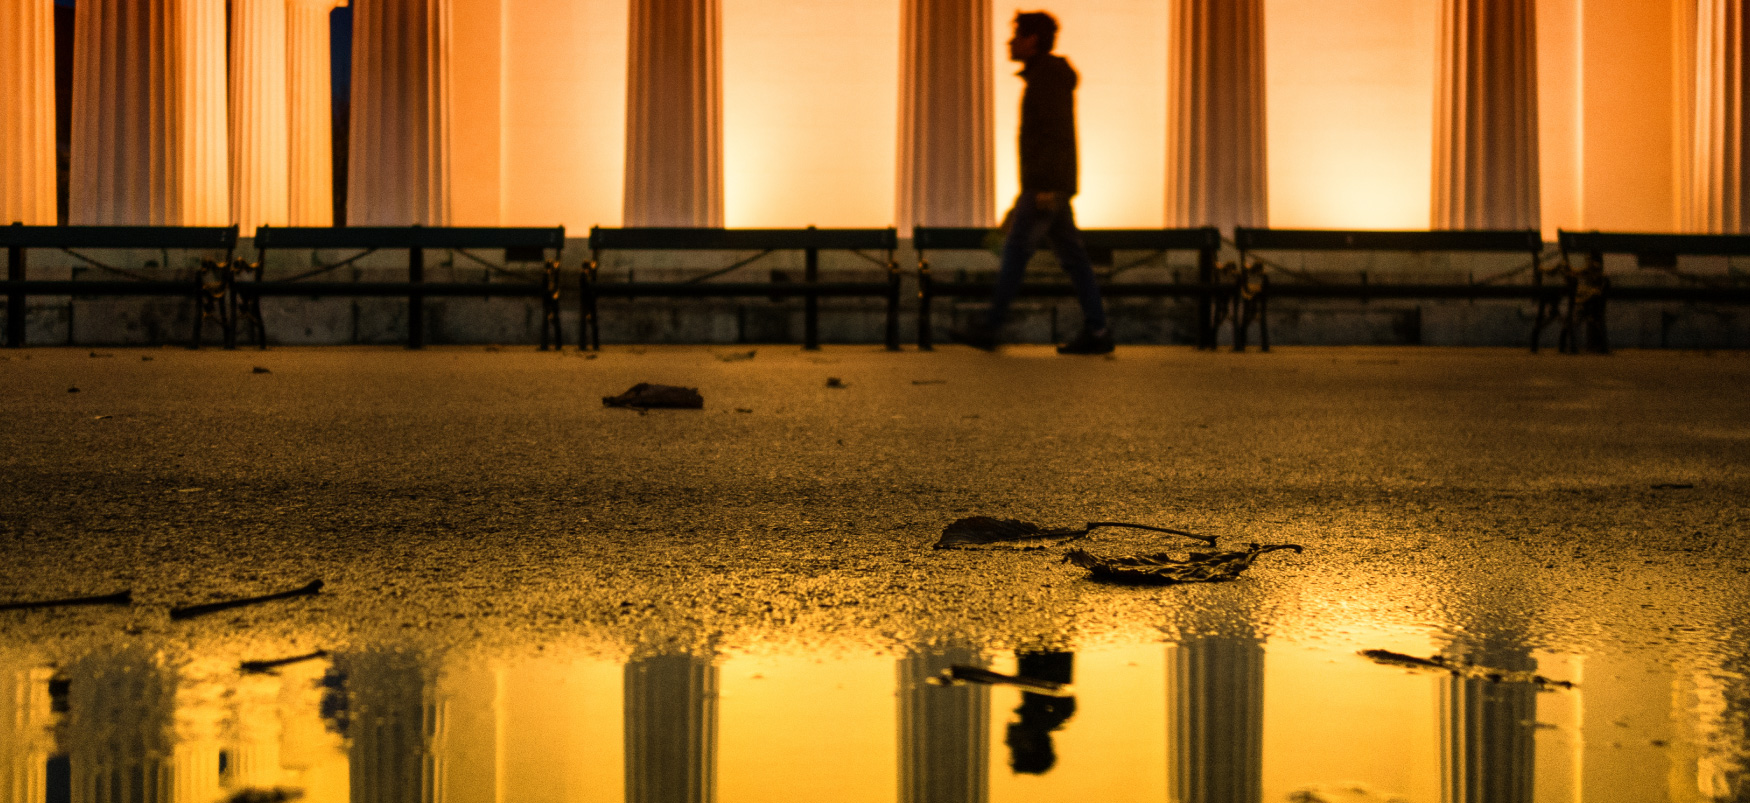 Uma pessoa andando em frente a um grande prédio forrado com colunas de mármore. O reflexo da pessoa é visível em uma poça em primeiro plano.